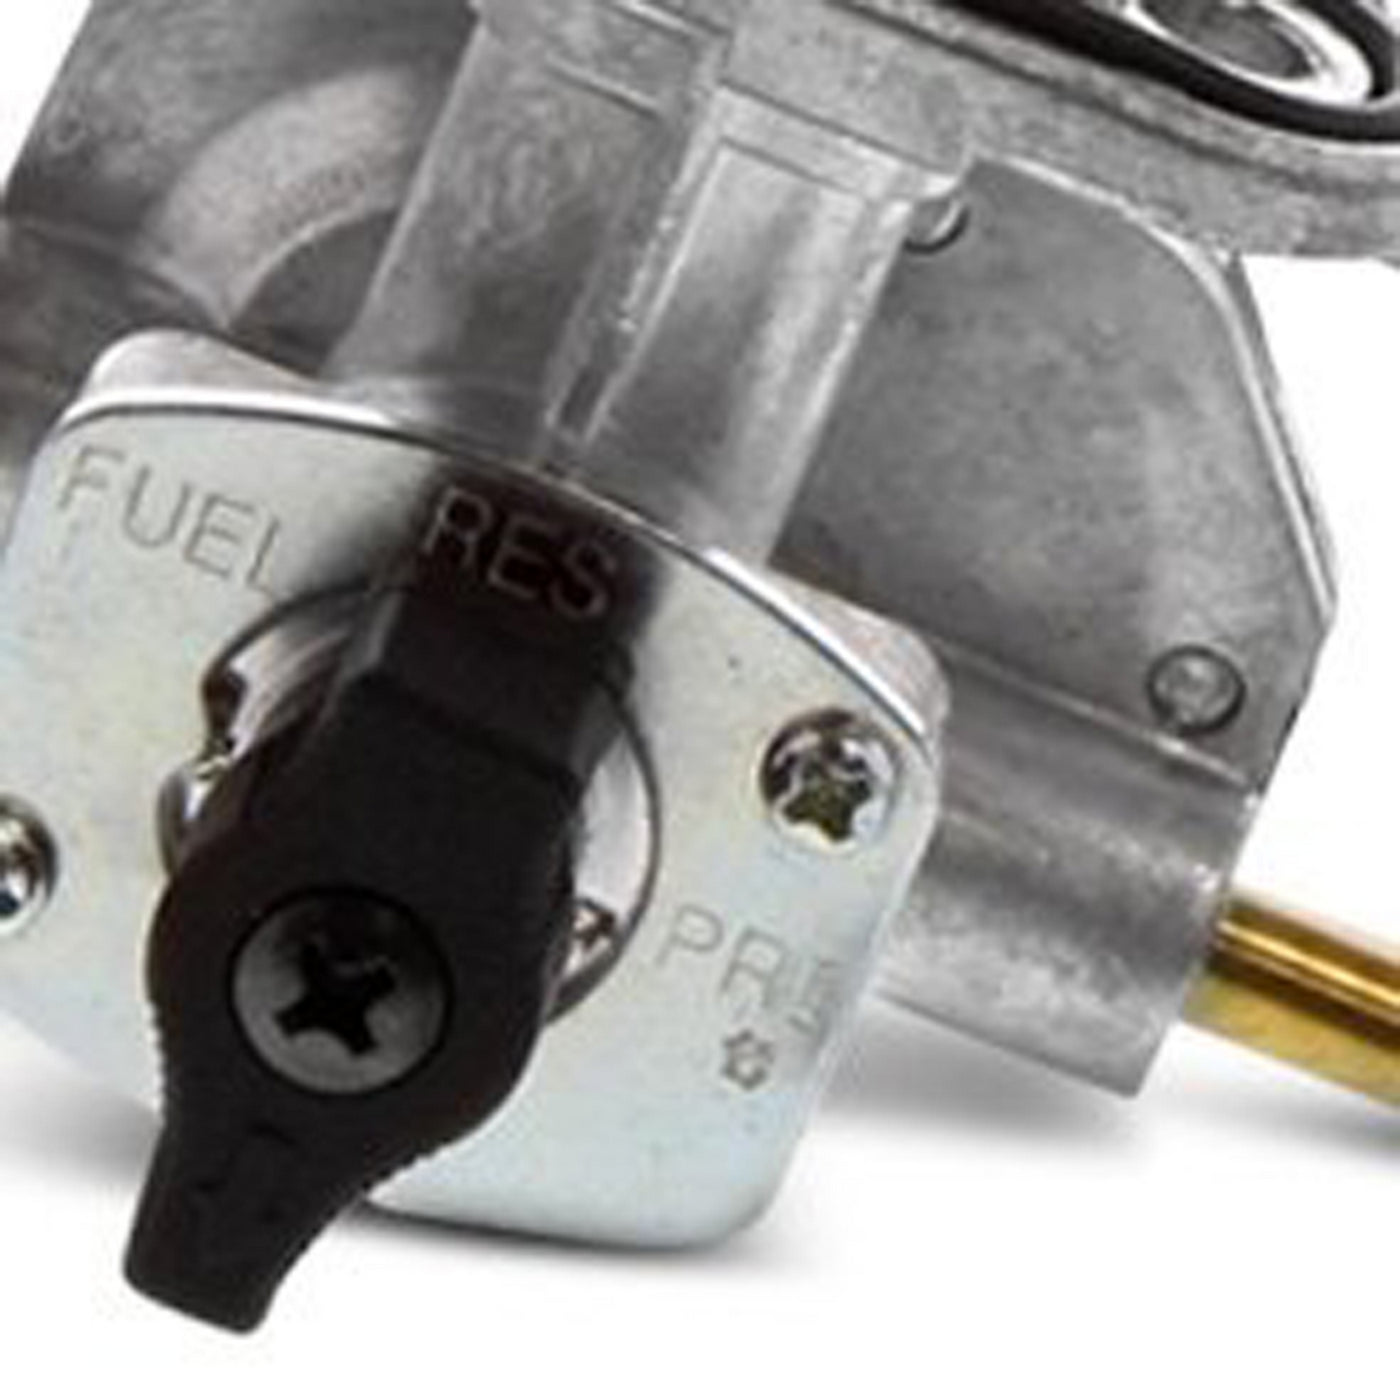 Fuel Star FS101-0167 Fuel Valve Kit #FS101-0167